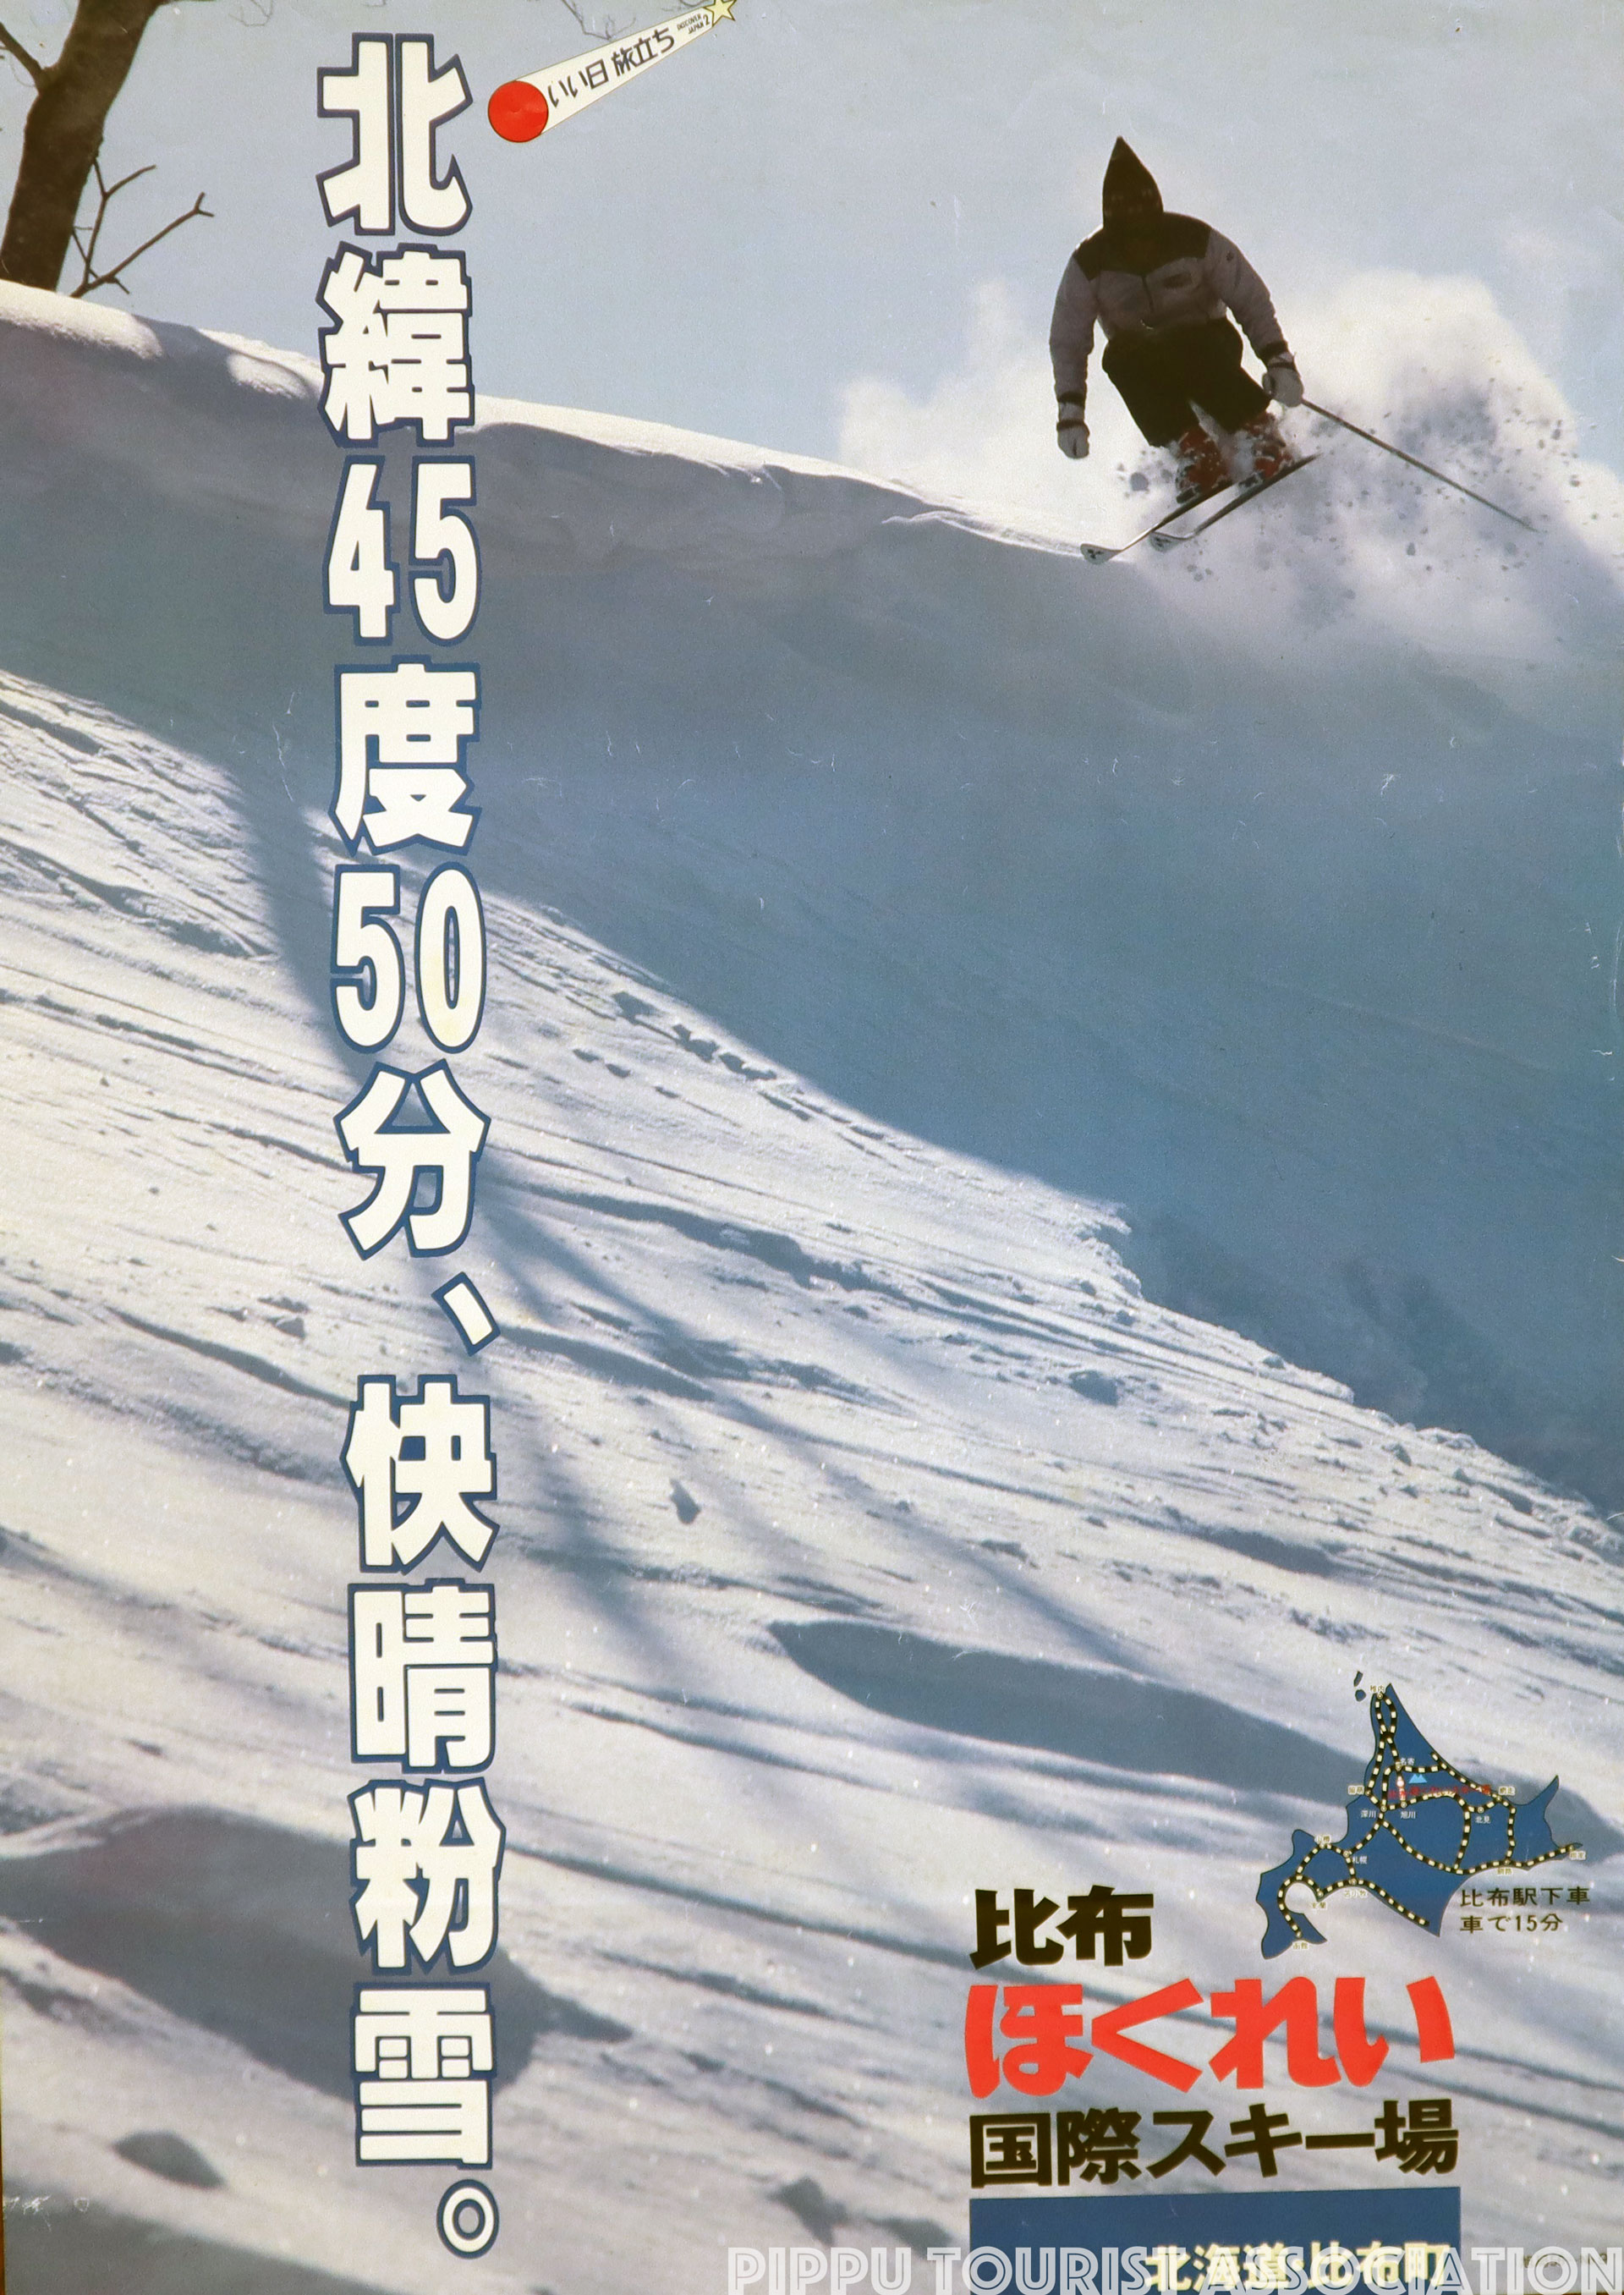 昭和56年比布ほくれい国際スキー場